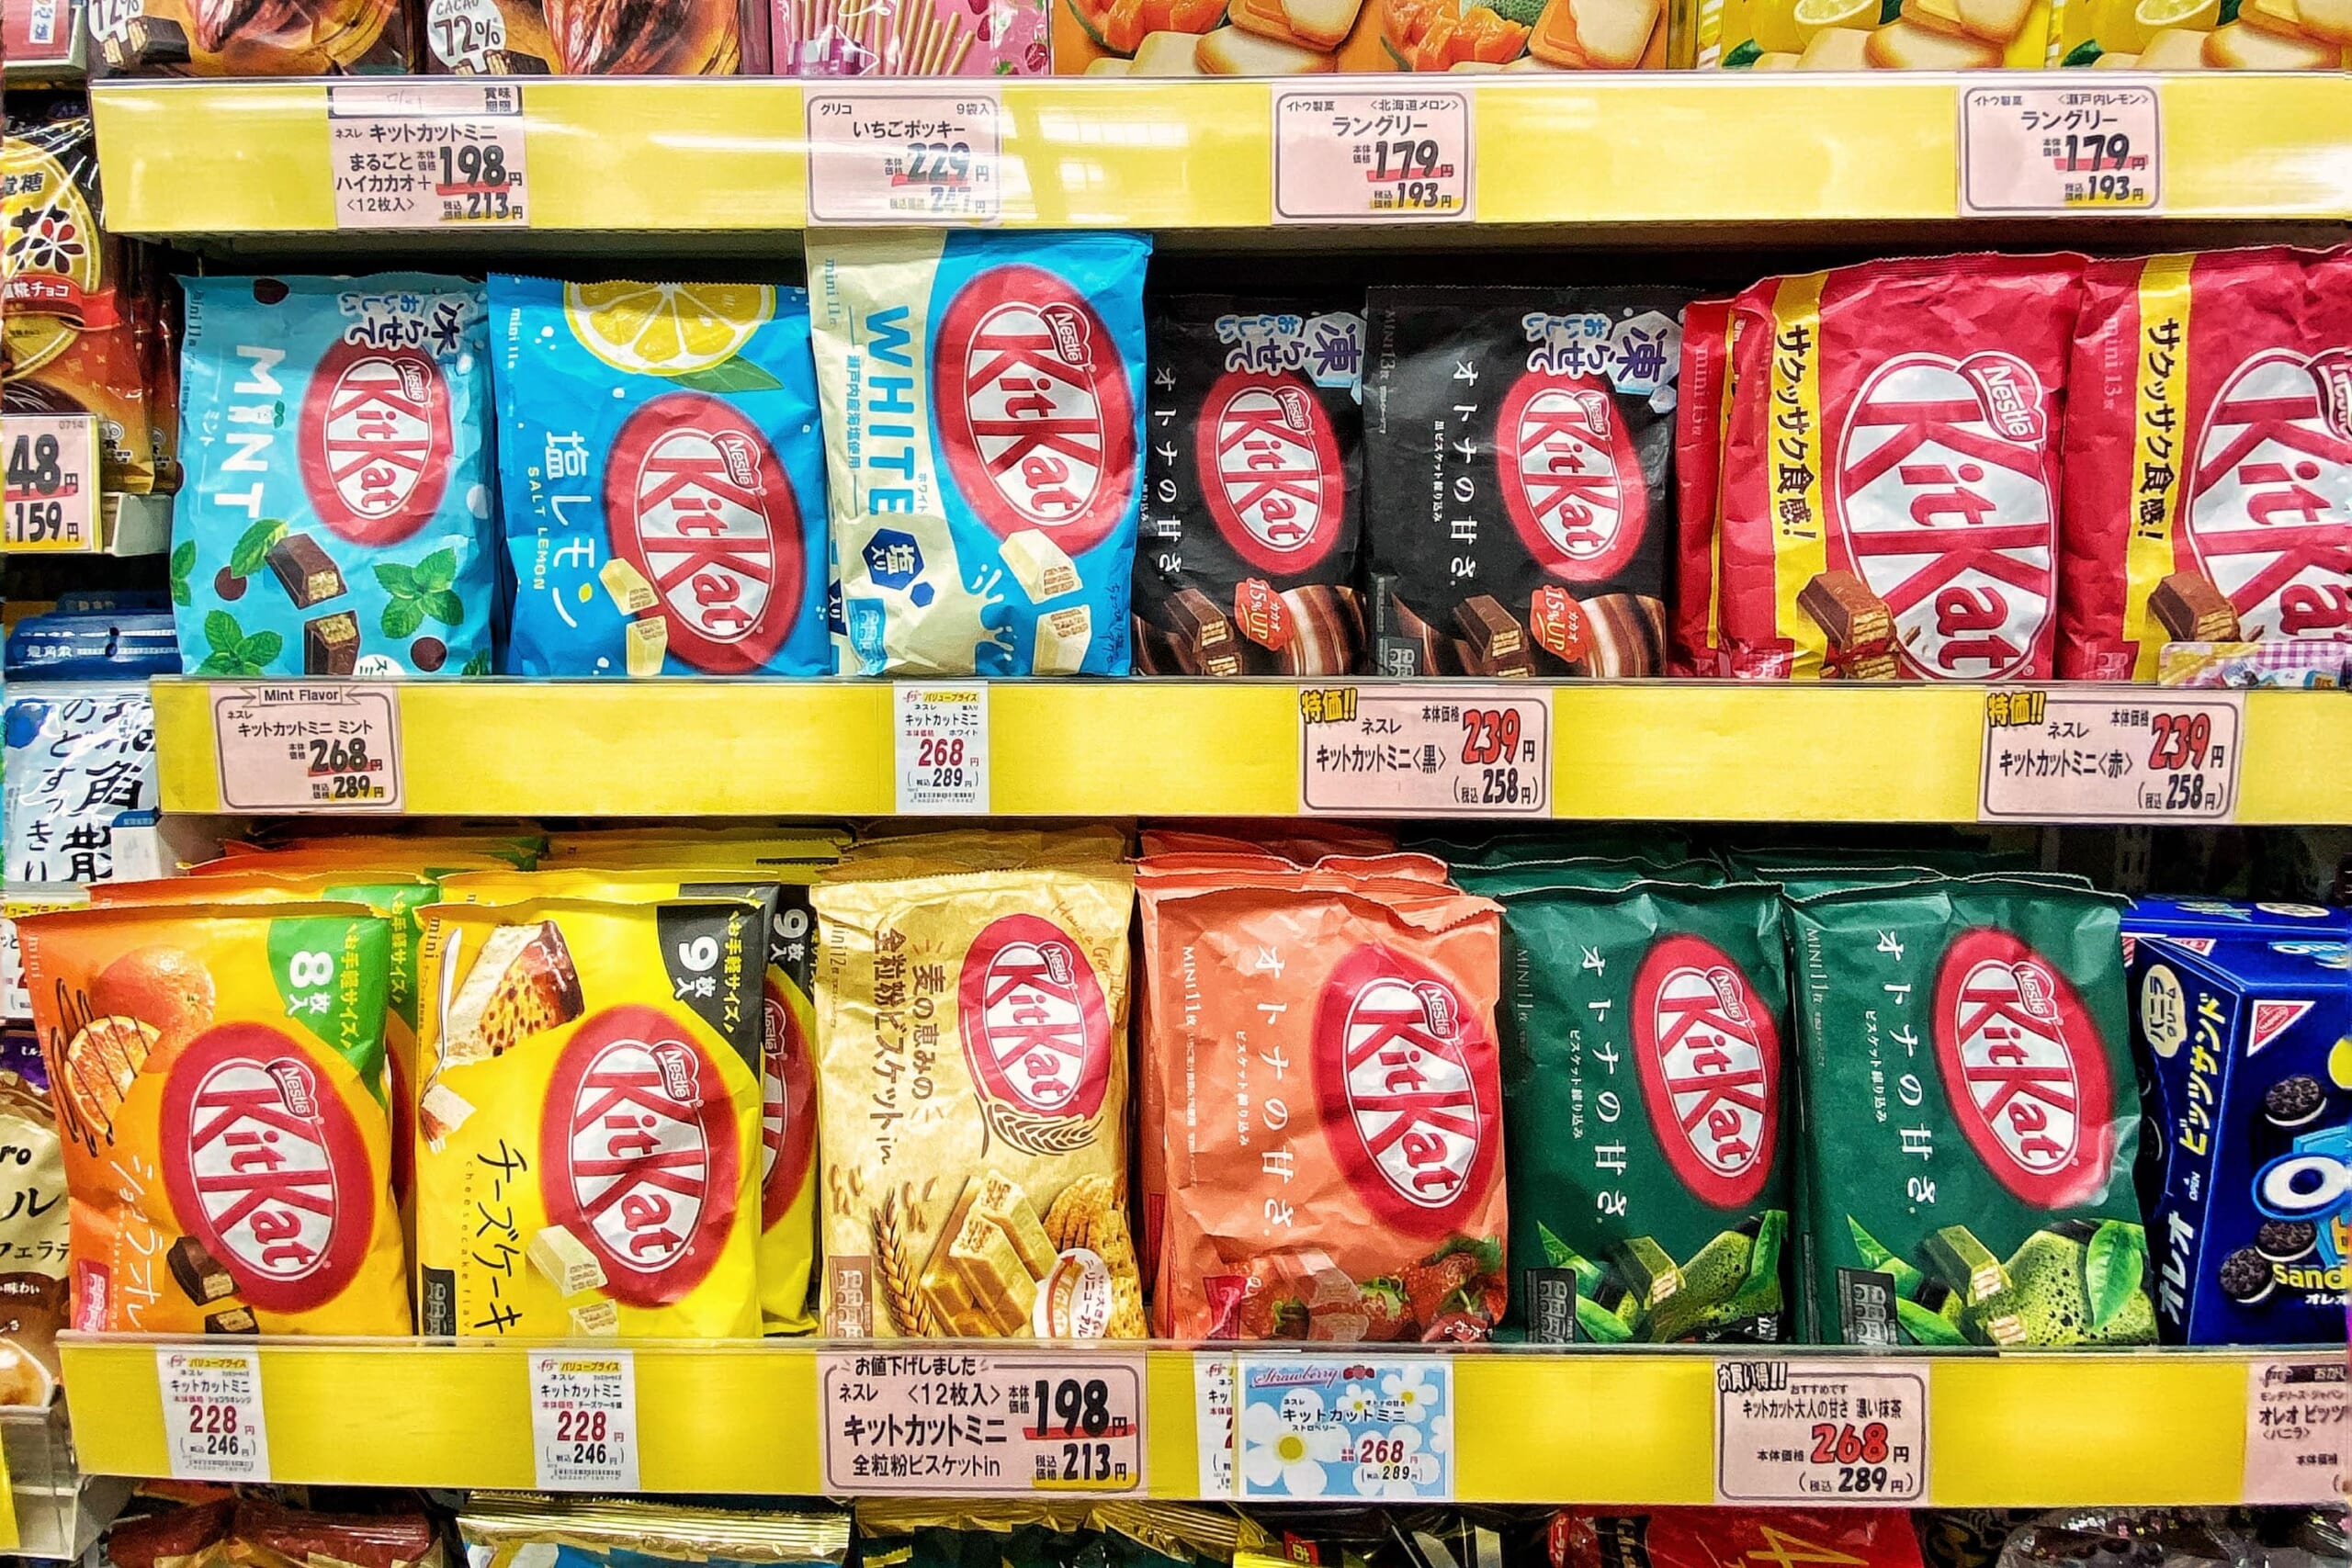 KitKat shelves in Japan